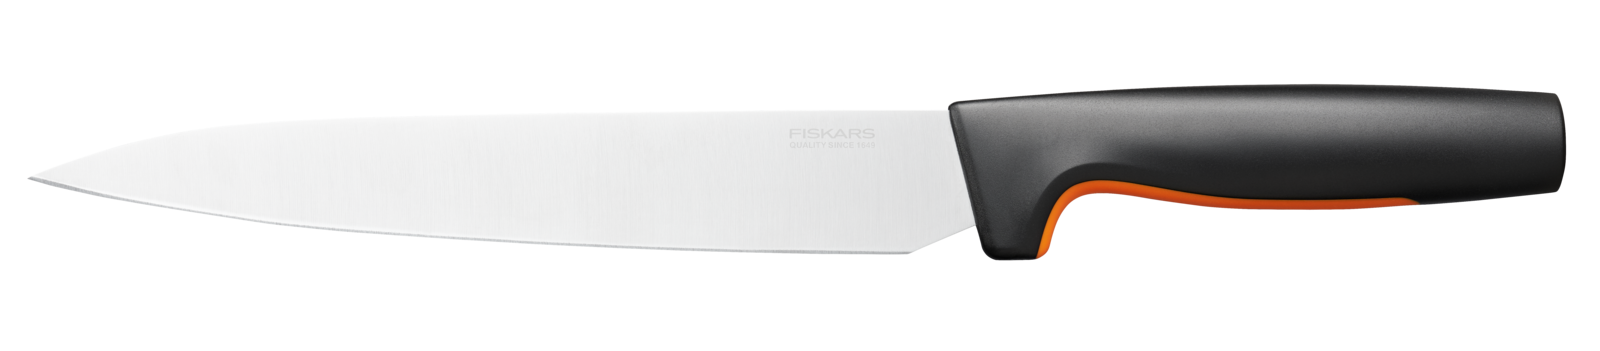 Porcovací nůž Fiskars, 21 cm - 1057539